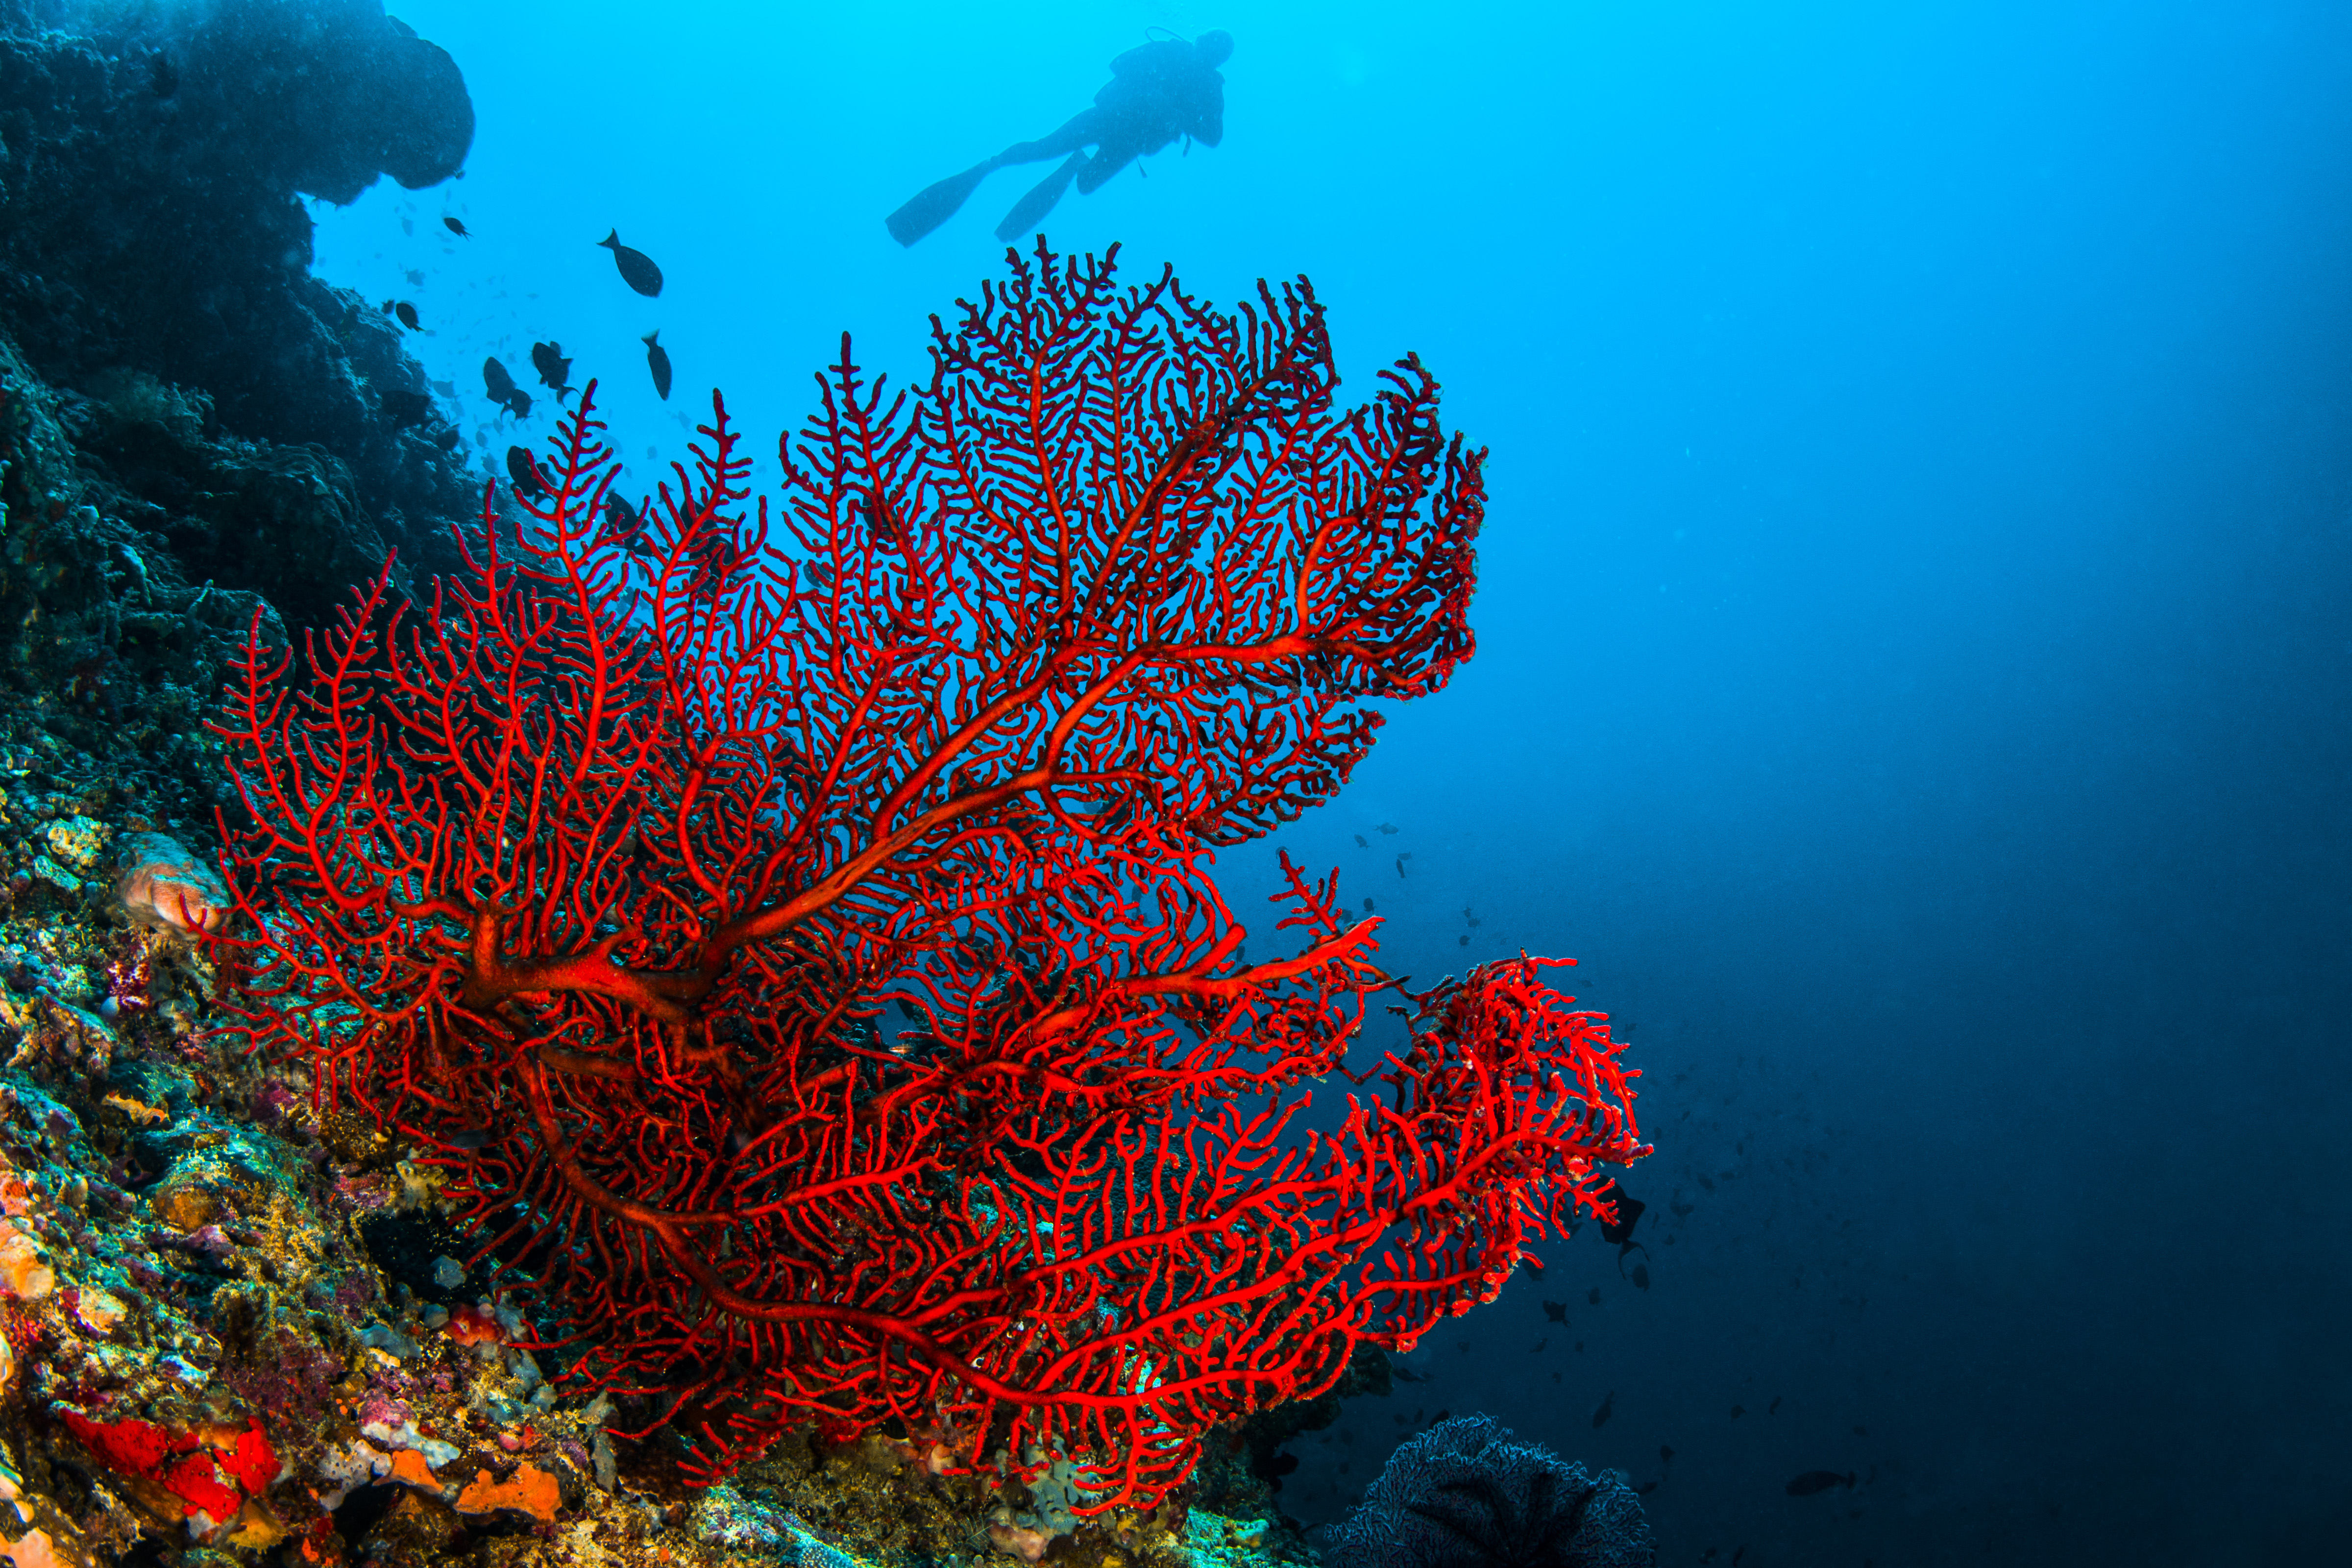 Как образуются коралловые рифы